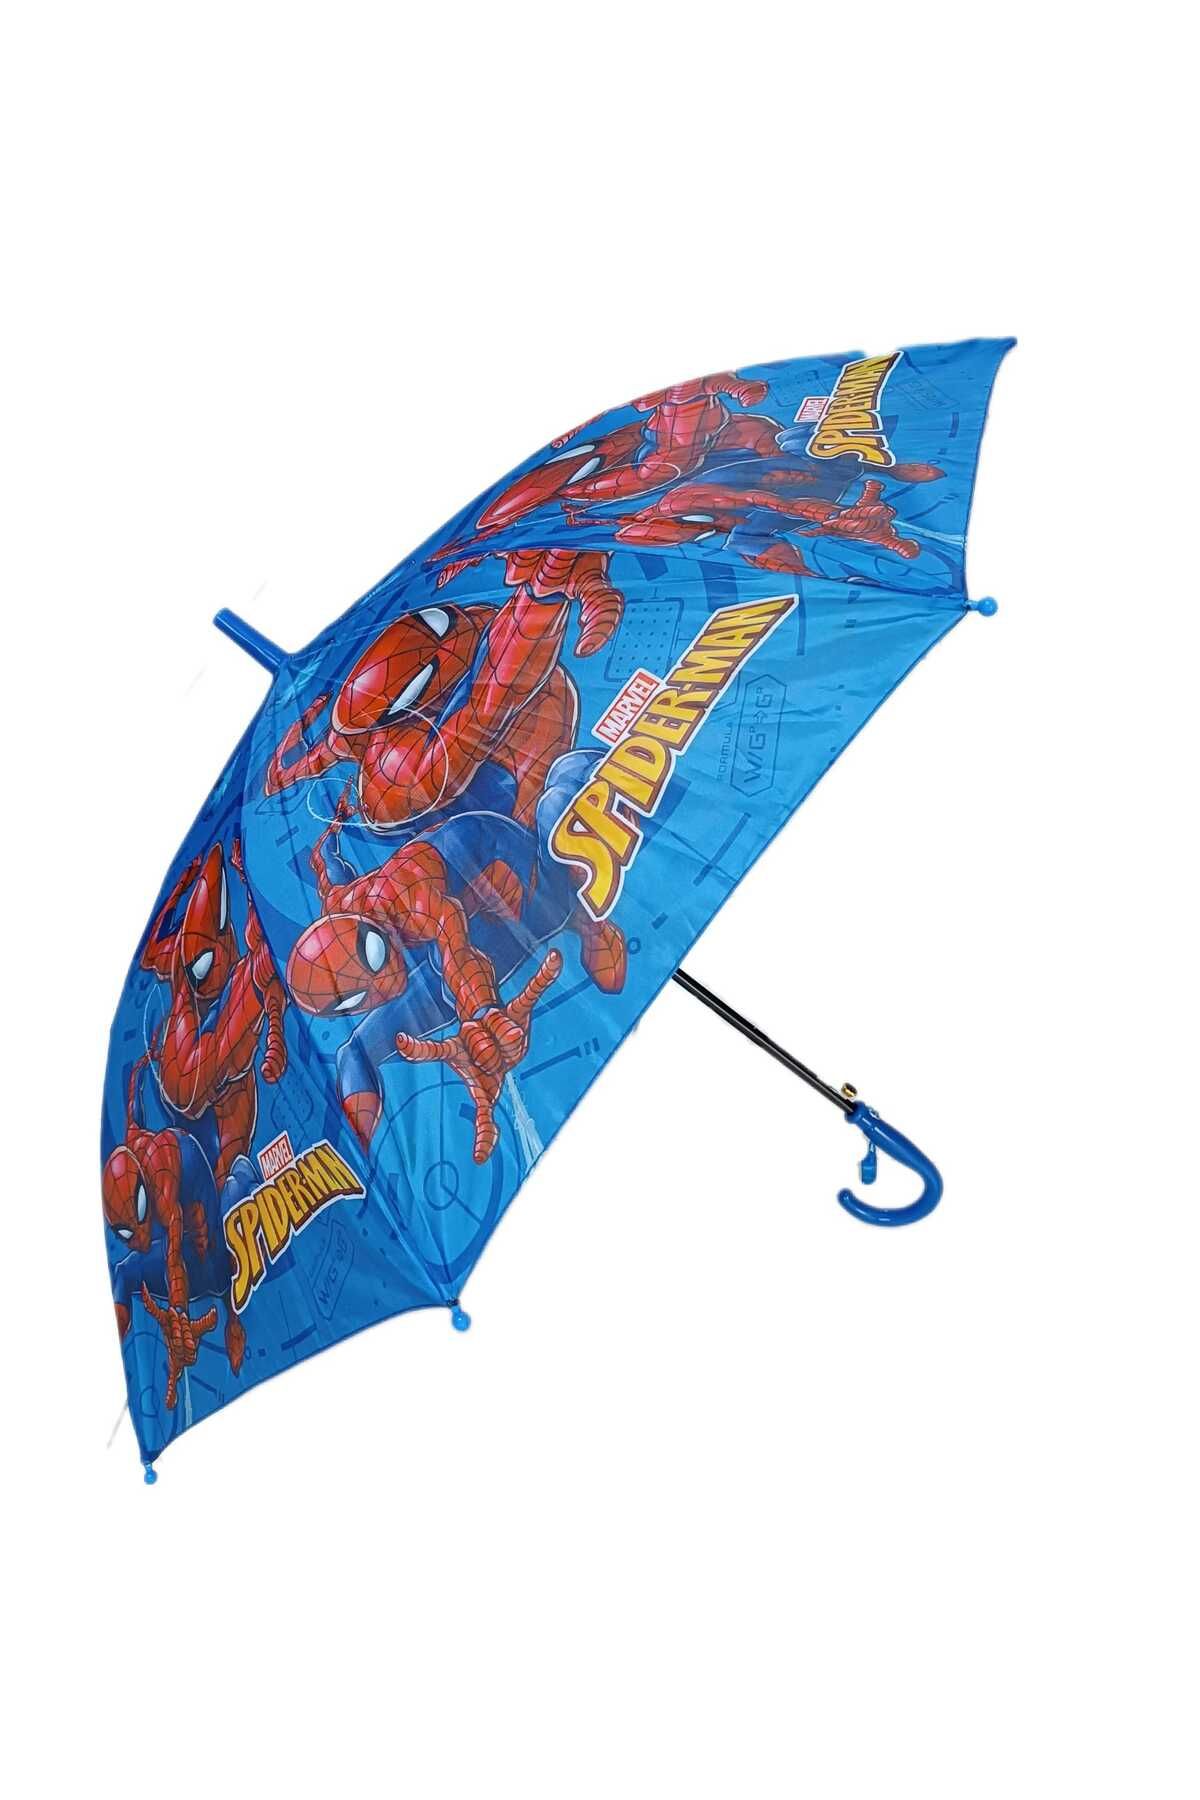 LRS STORE Örümcek Adamlı Şemsiye Su Tutmaz Spiderman Desenli Çocuk Şemsiyesi 85 cm Çap